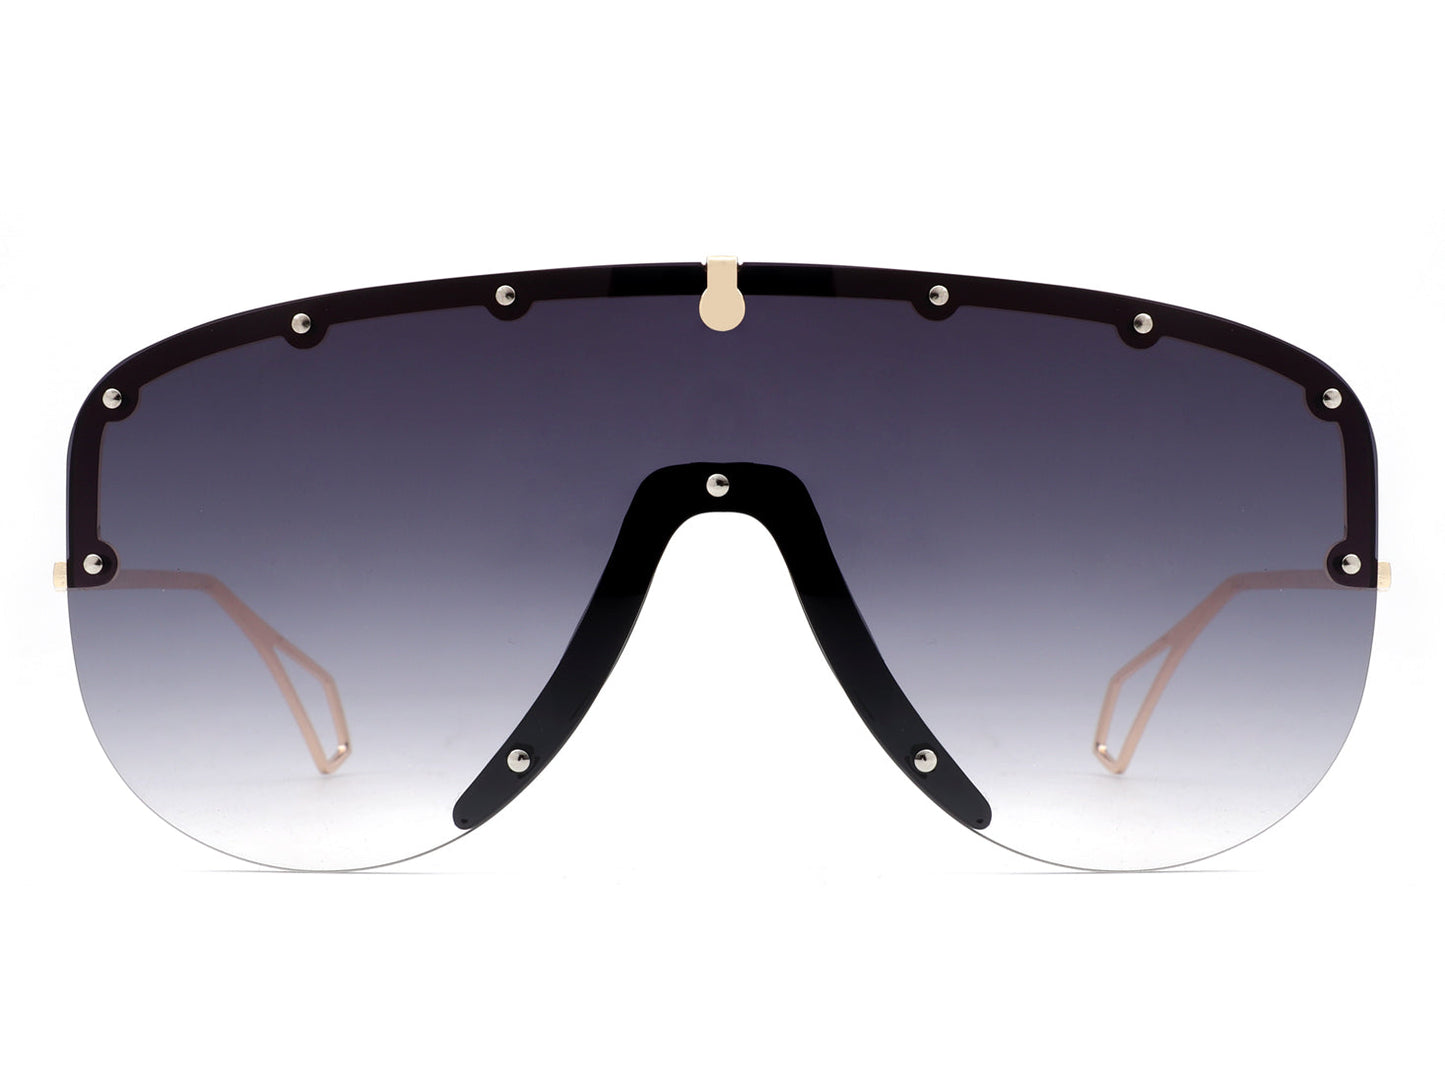 Black aviator sunglasses